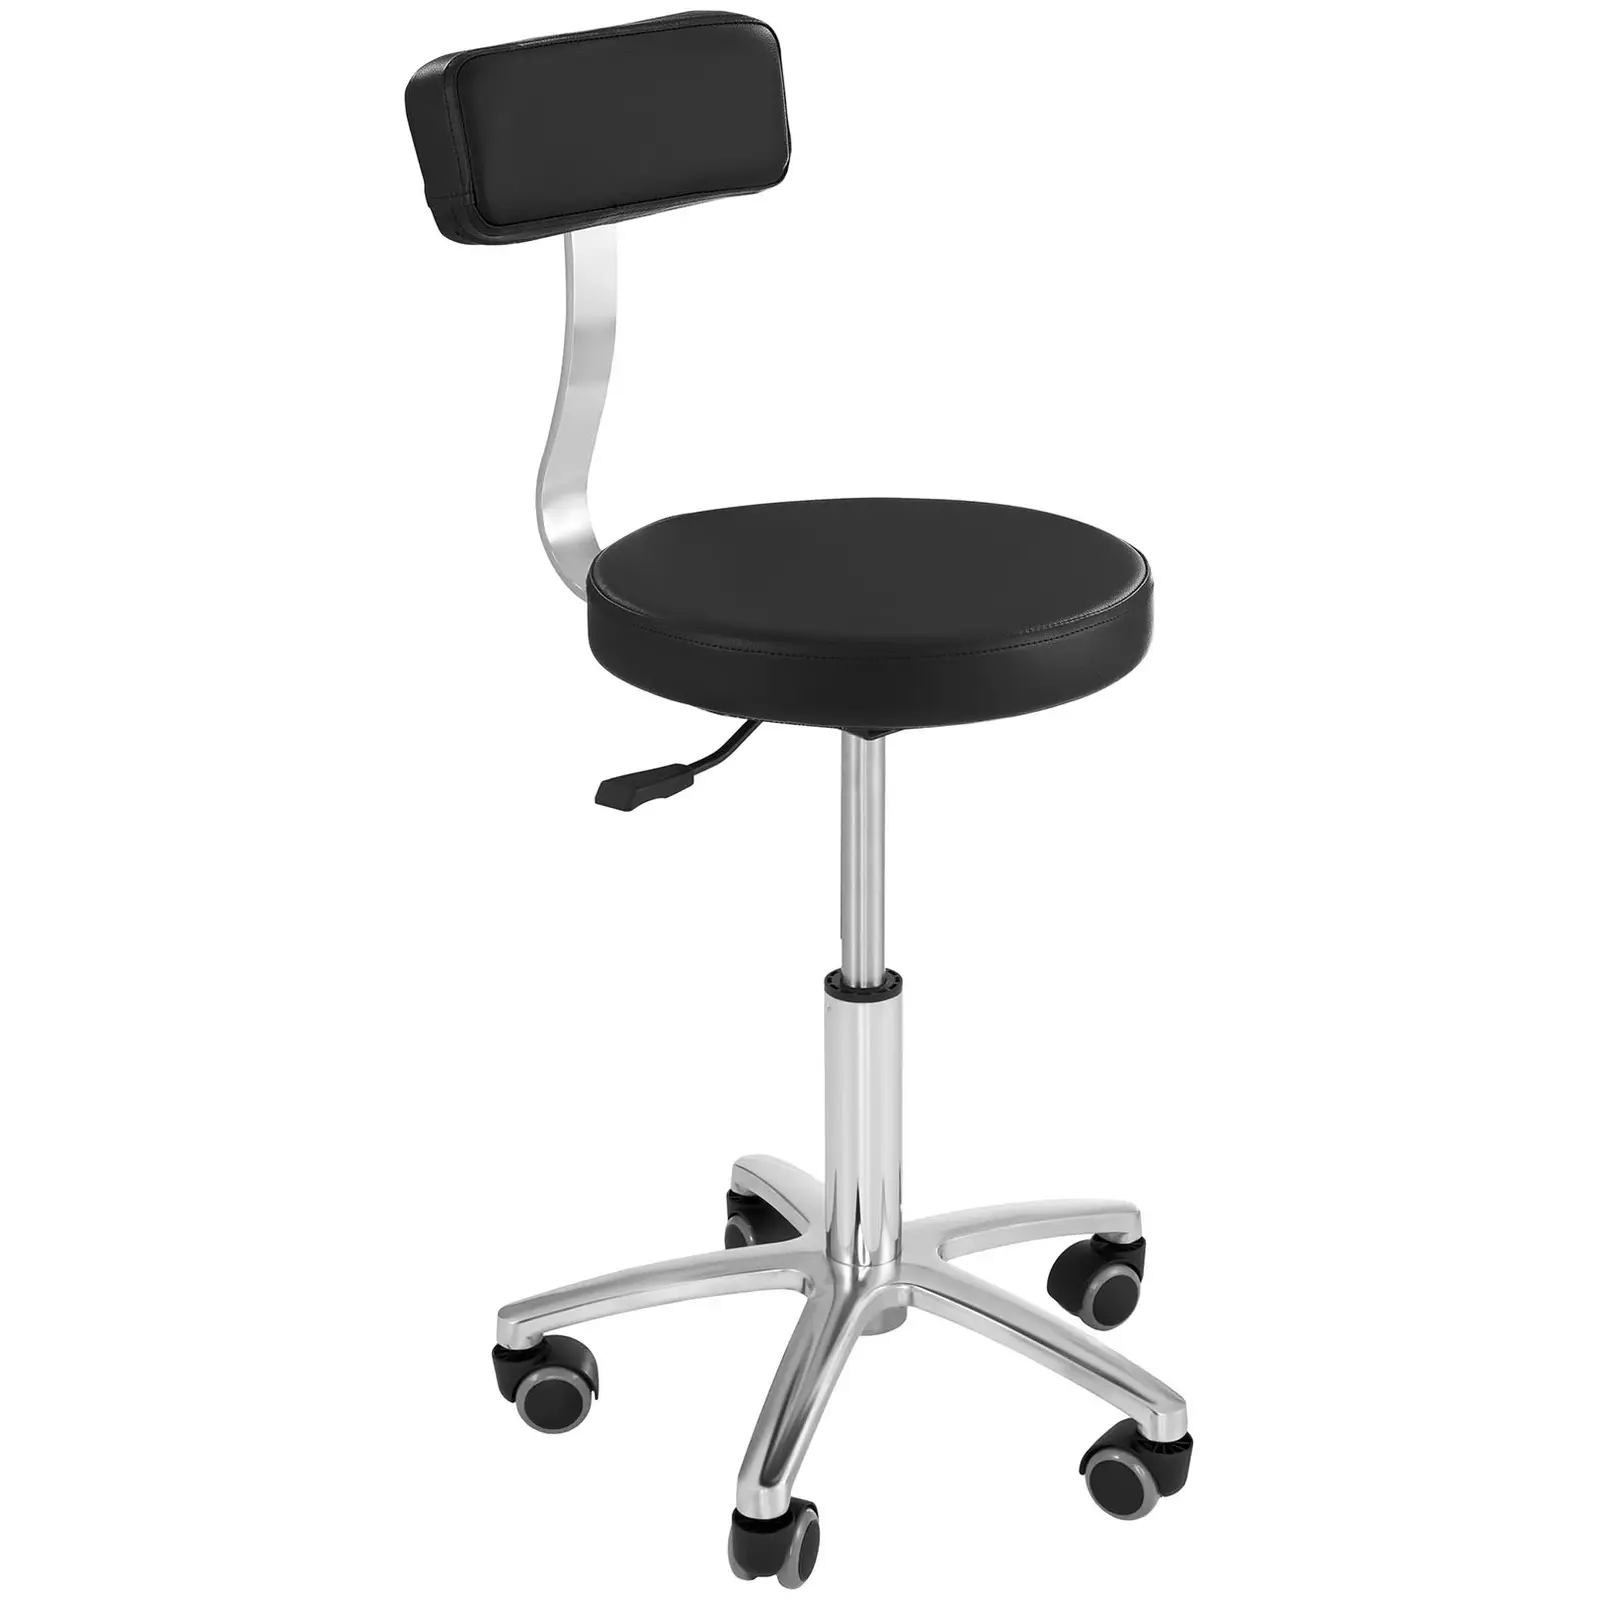 Fodrász szék - 445–580 mm - 150 kg - Fekete | physa